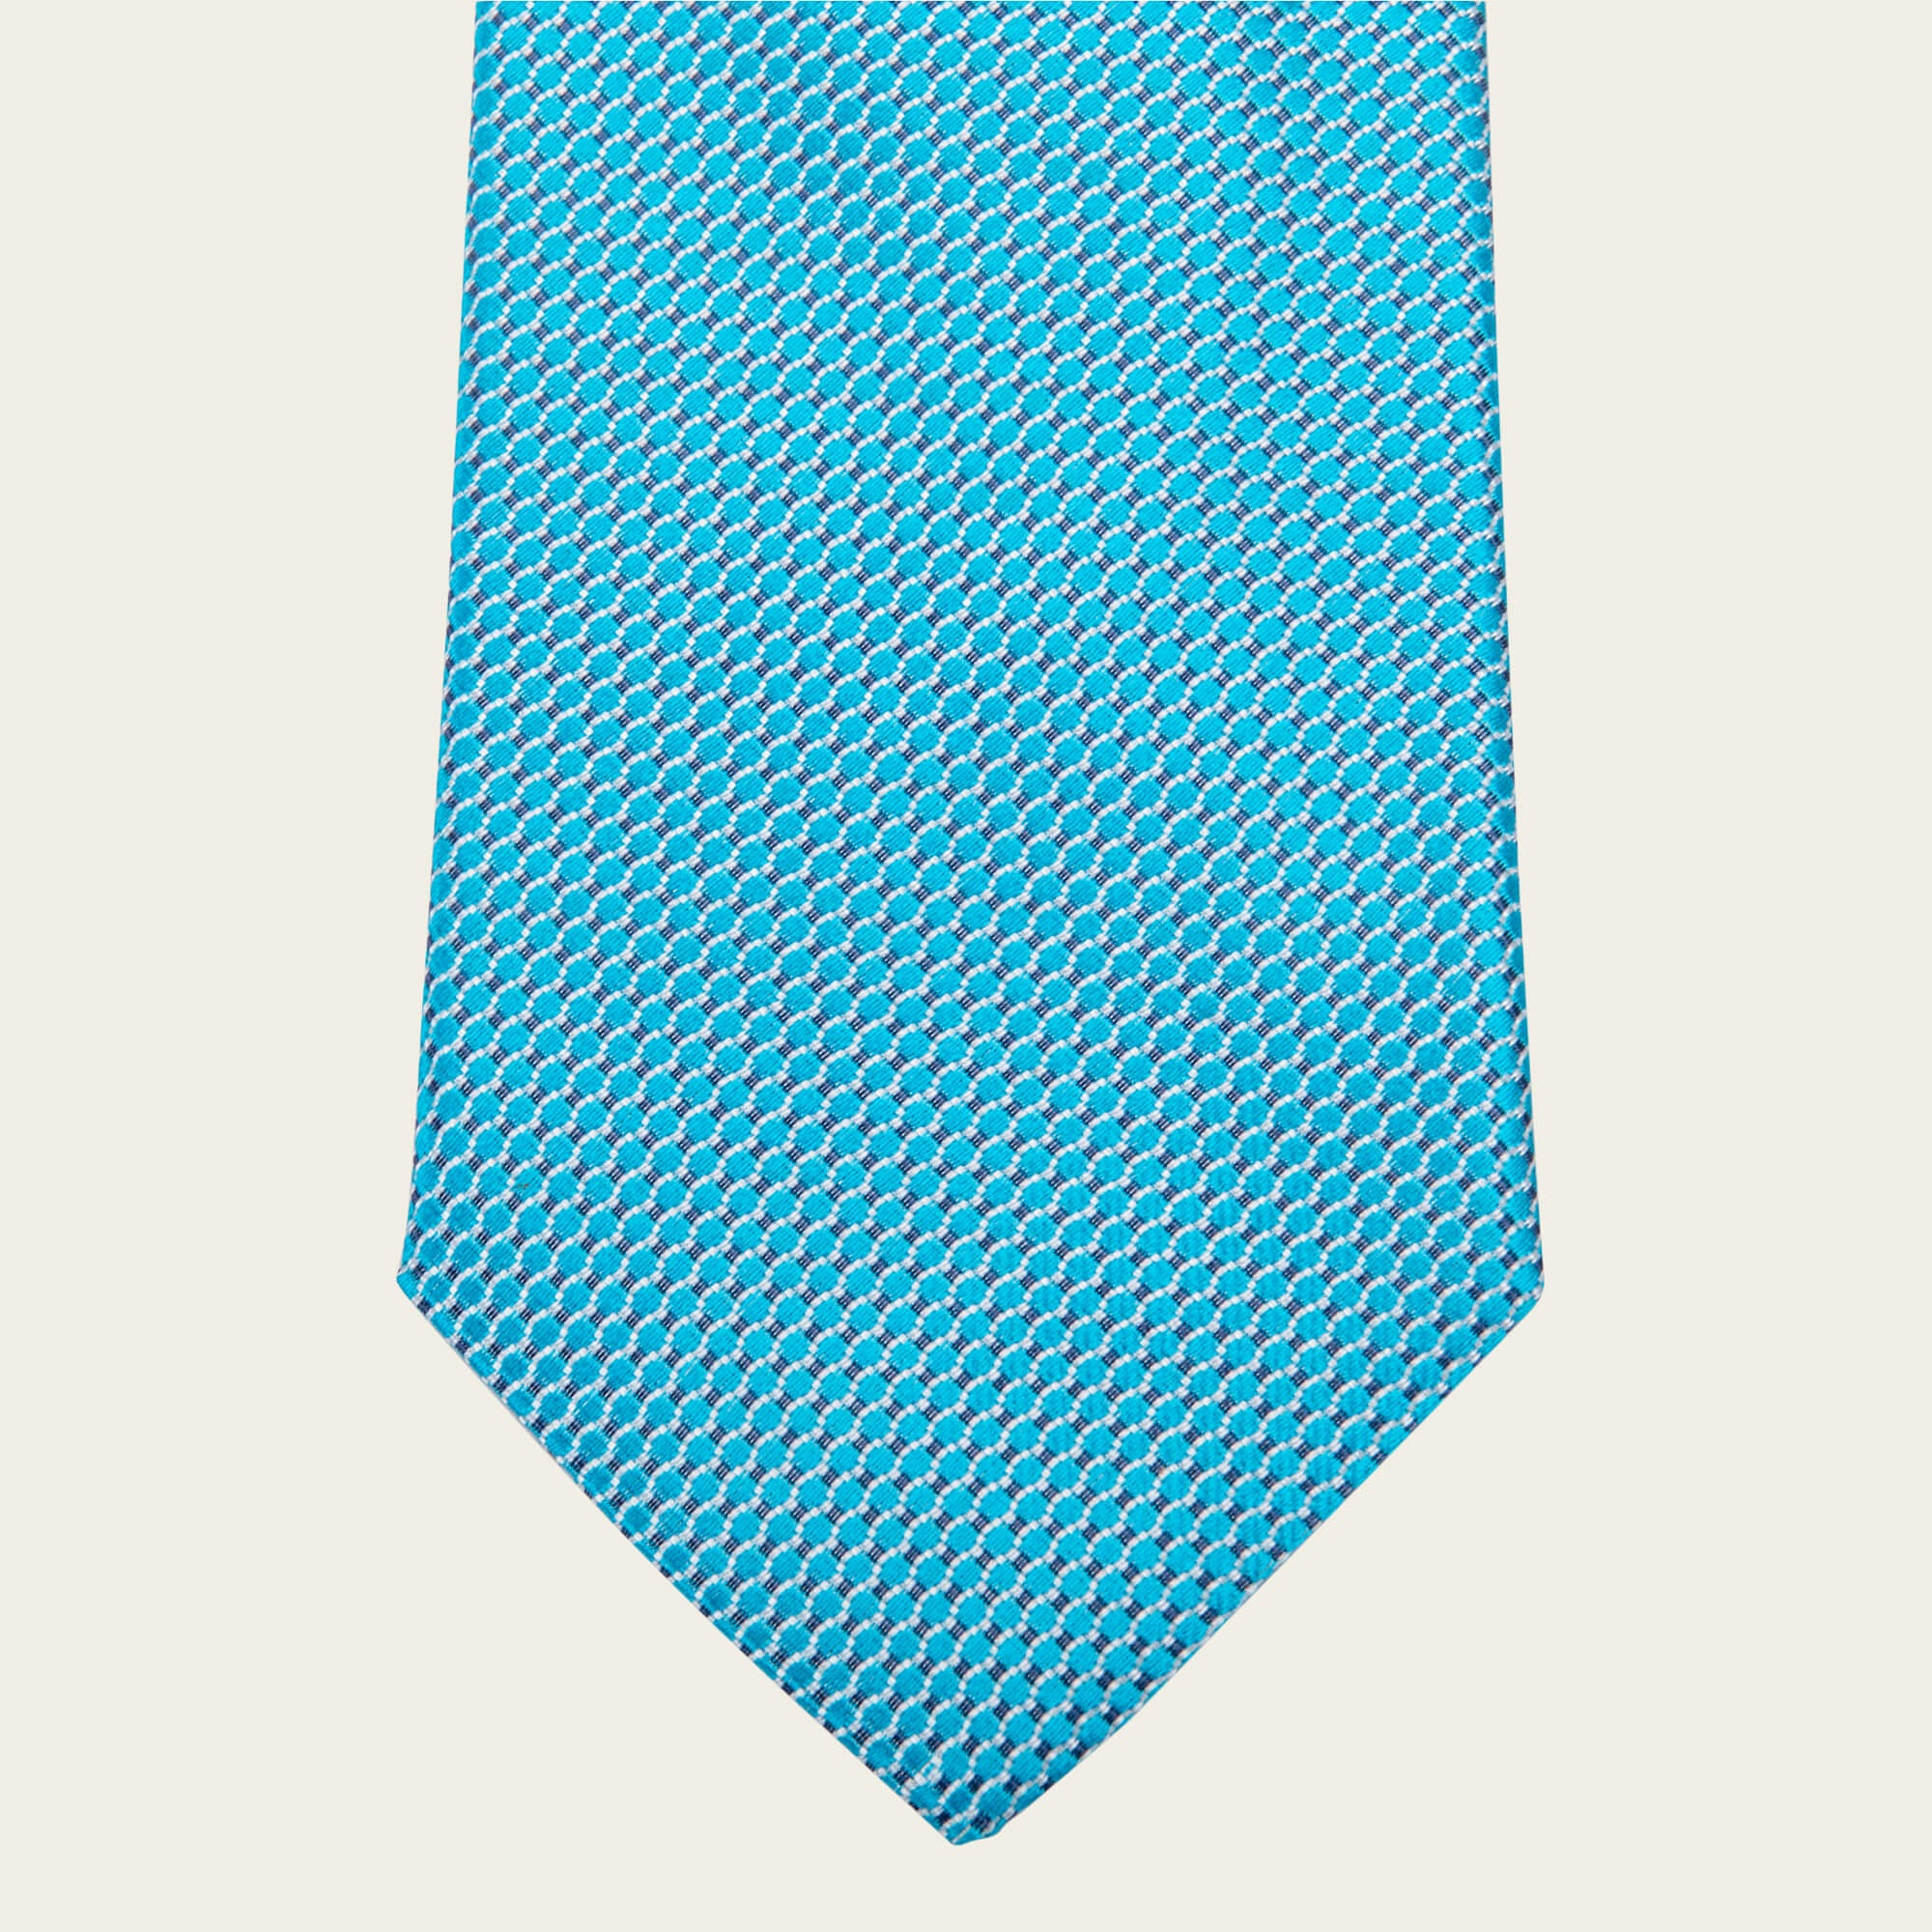 Turquoise Geometric Tie